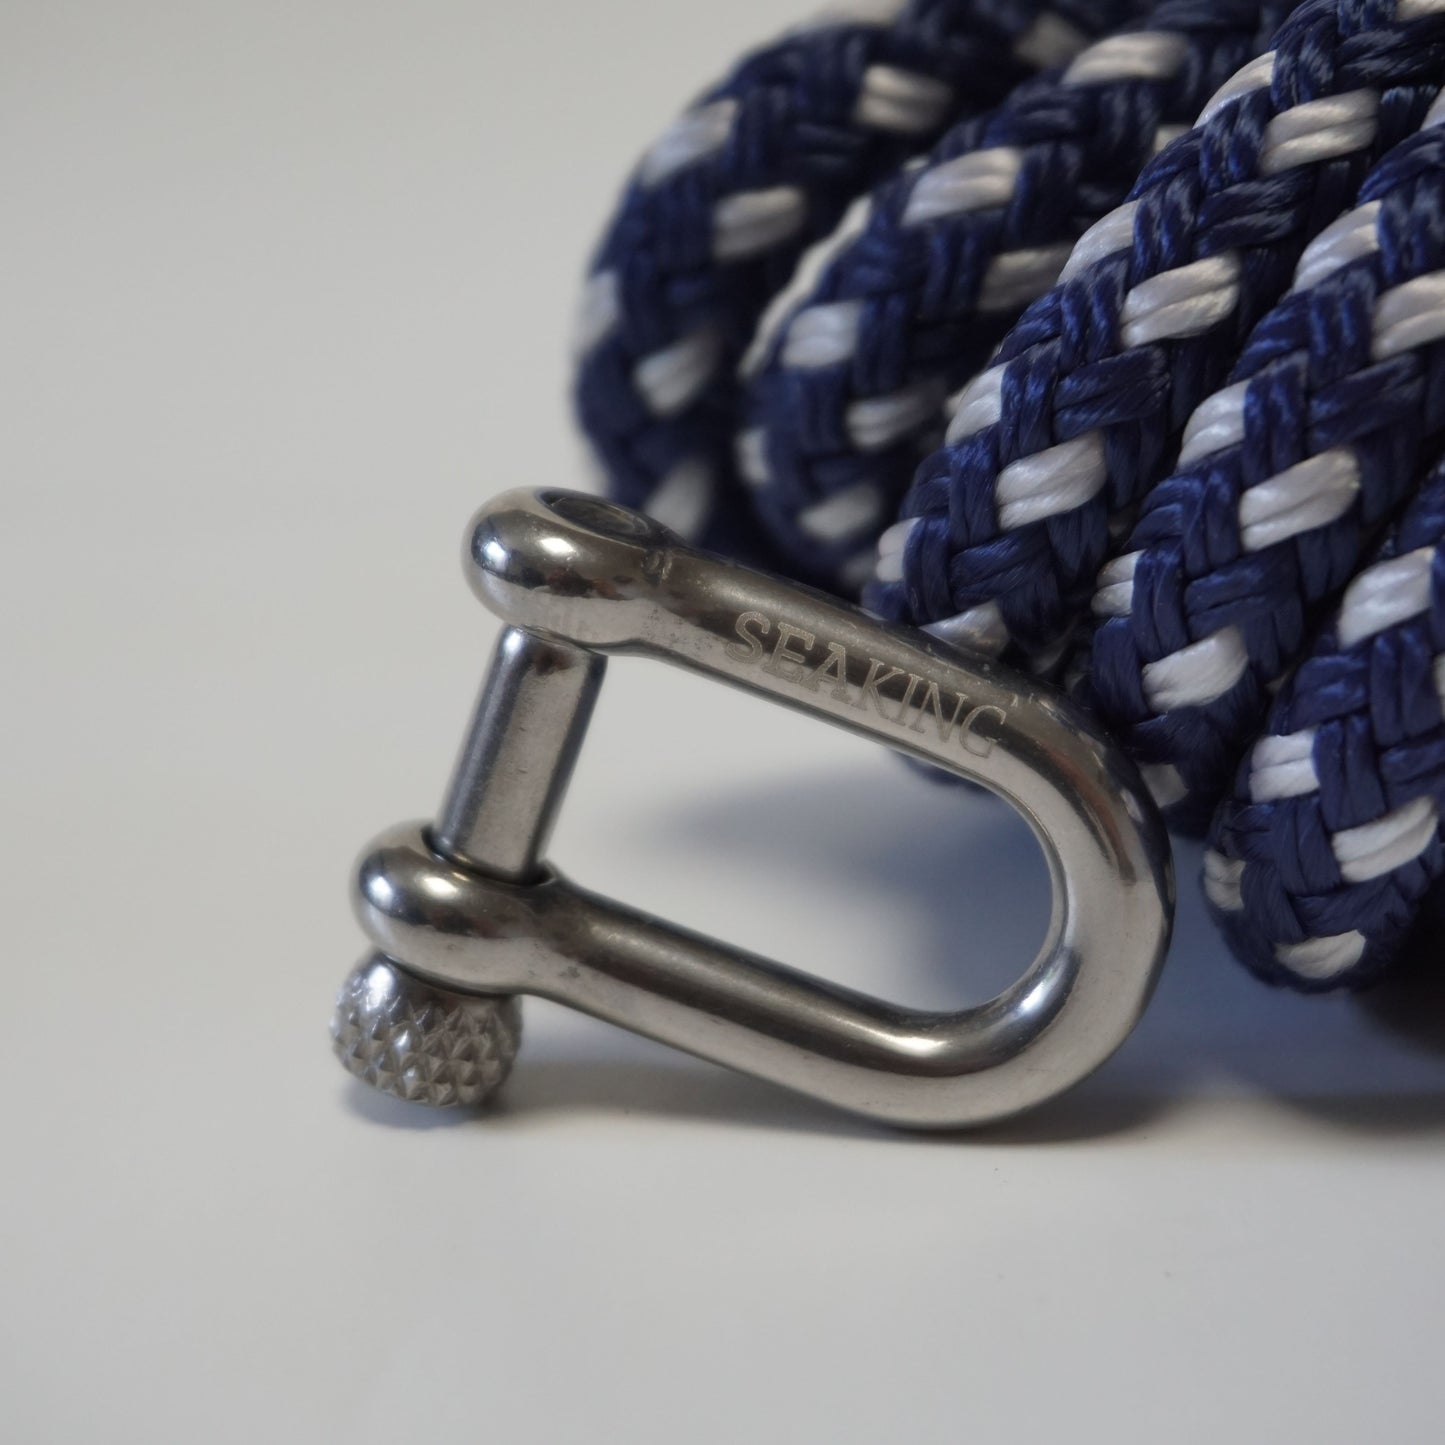 Verschluss für Attersee - Silber - Sea King Bracelets